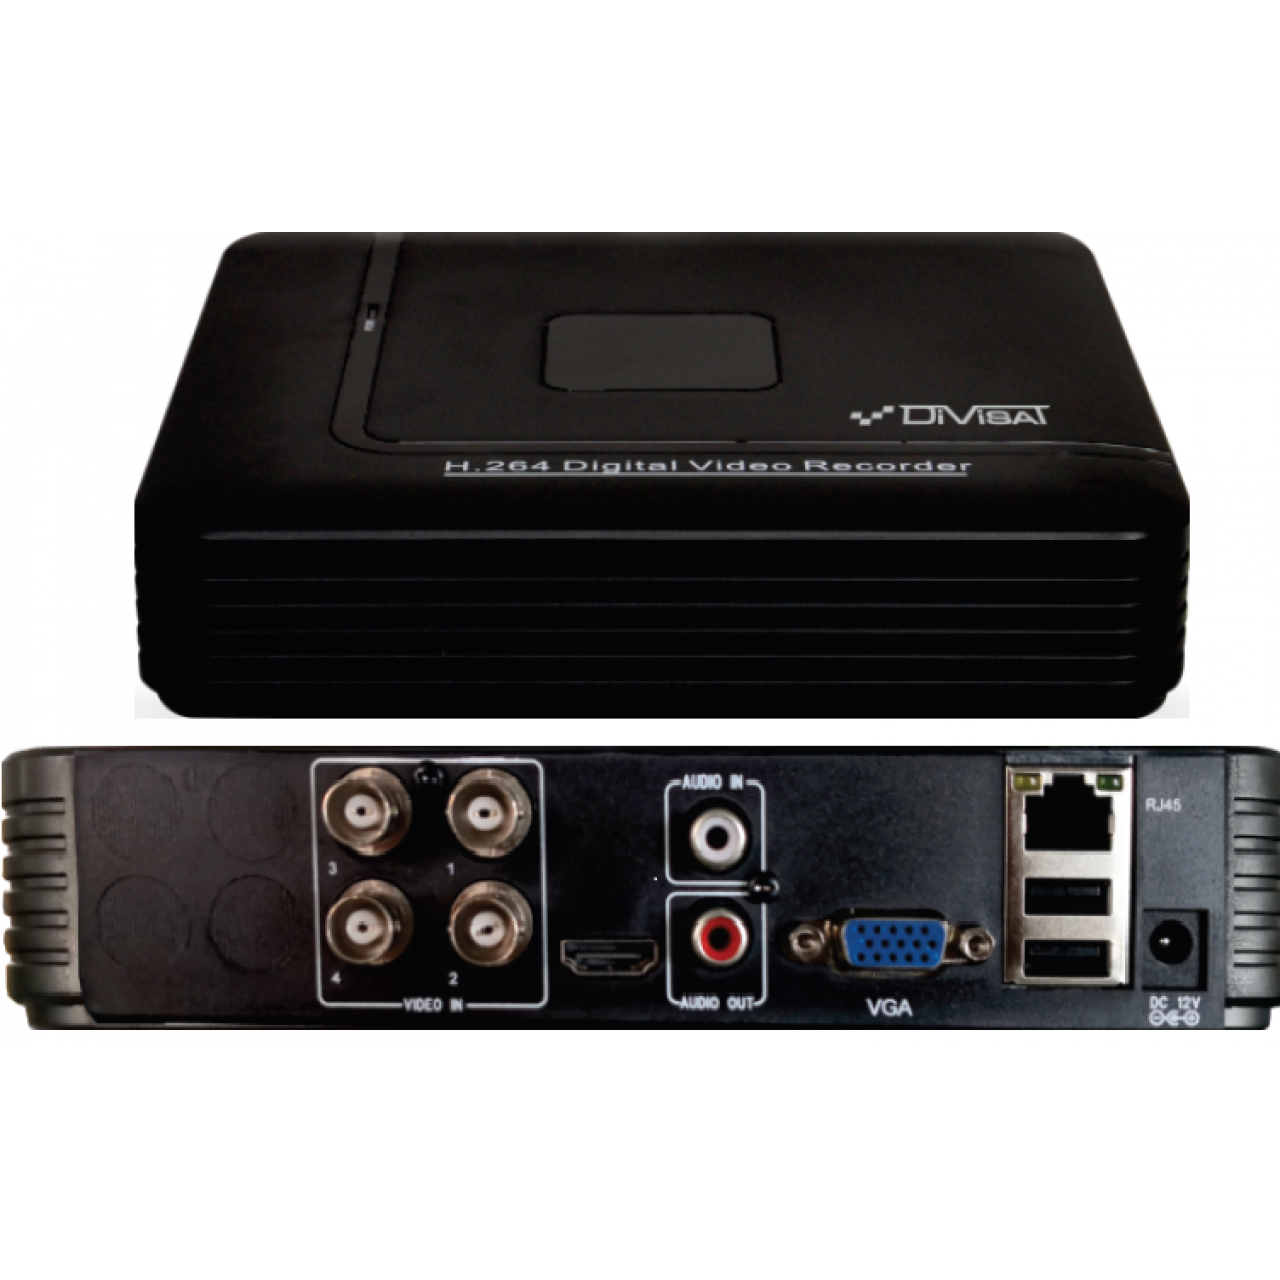 Гибридный 4-х канальный видеорегистратор DVR-4712P